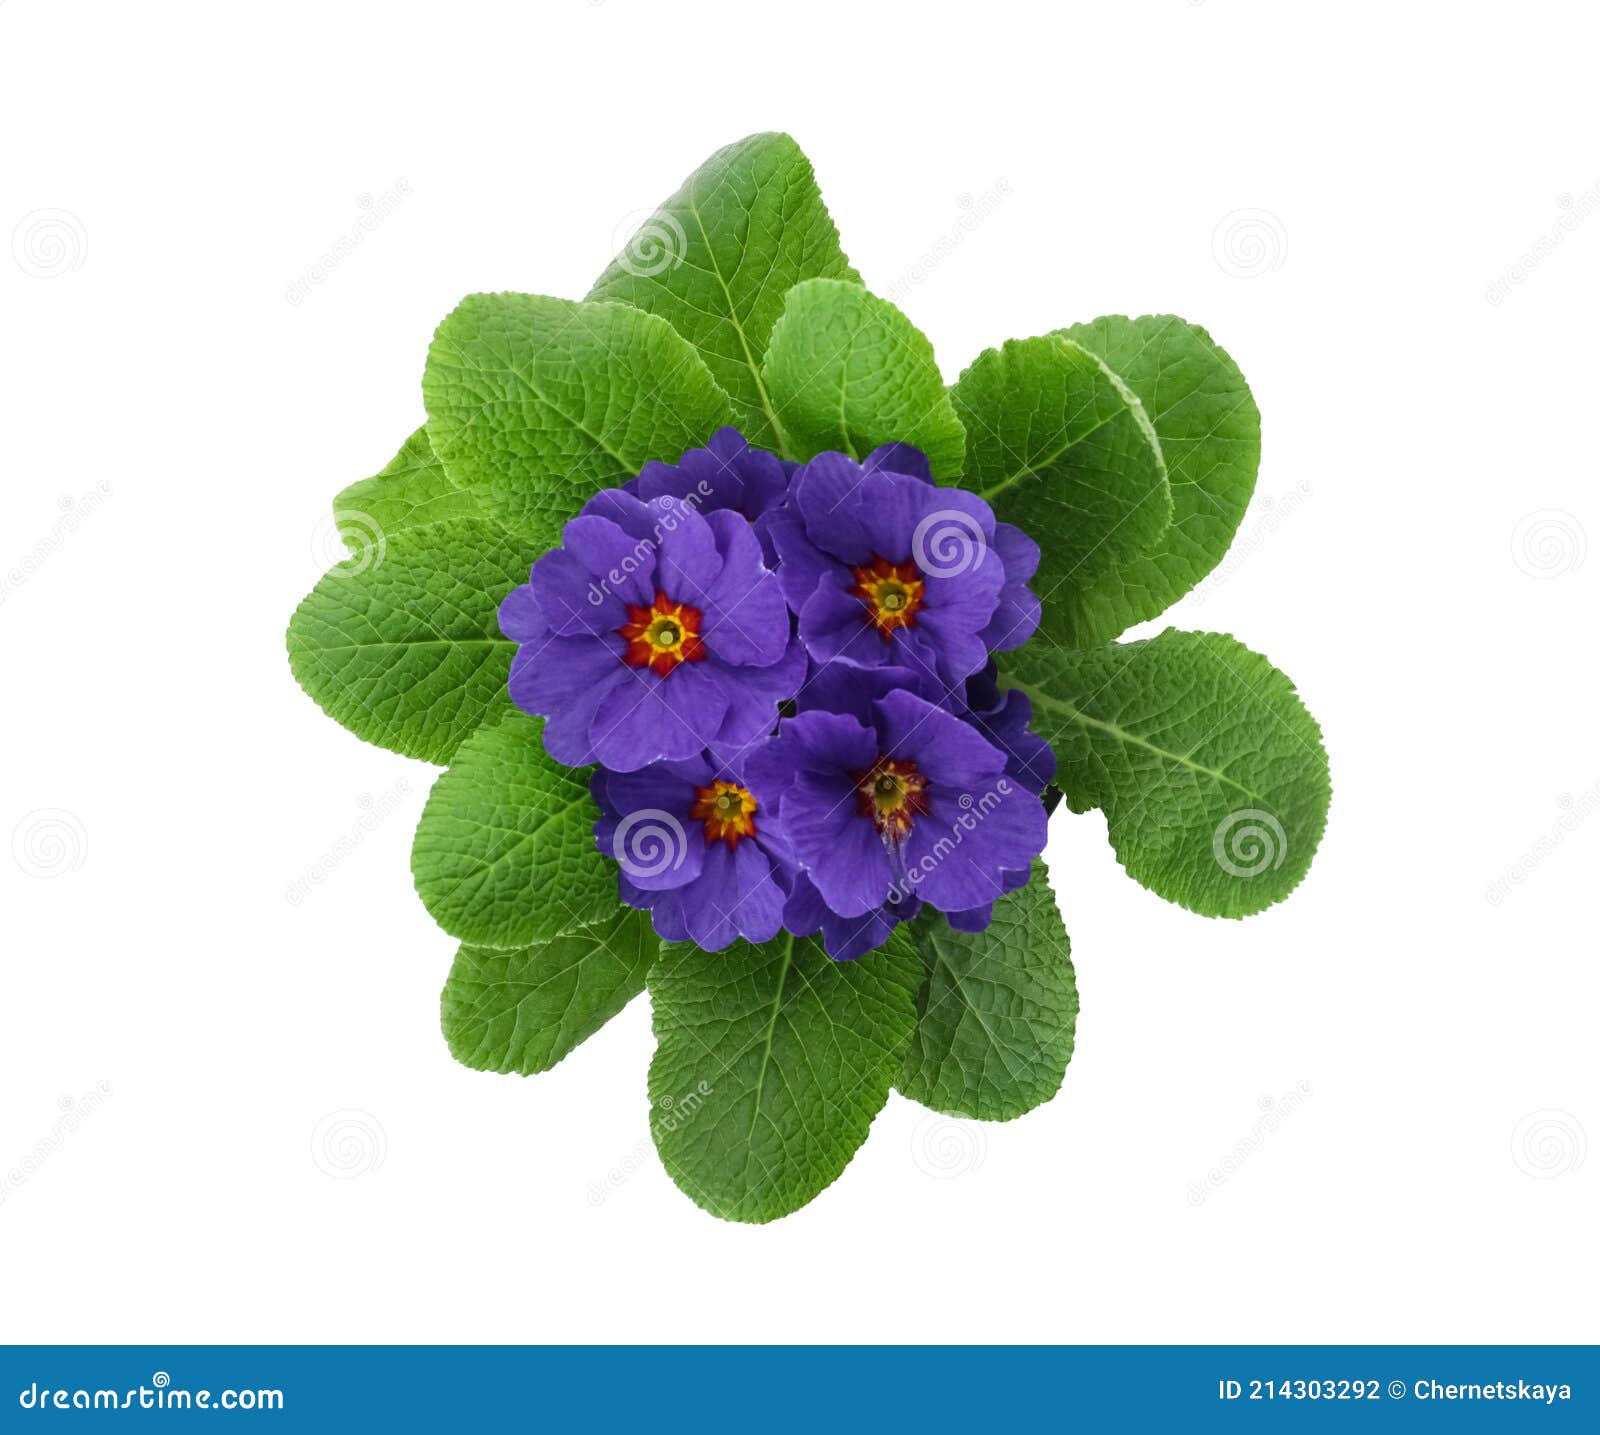 Prachtige Primula Primrose - Plant Met Paarse Bloemen Geïsoleerd Op Wit  Uitzicht. Springbloem Stock Foto - Image Of Kleur, Huishouden: 214303292